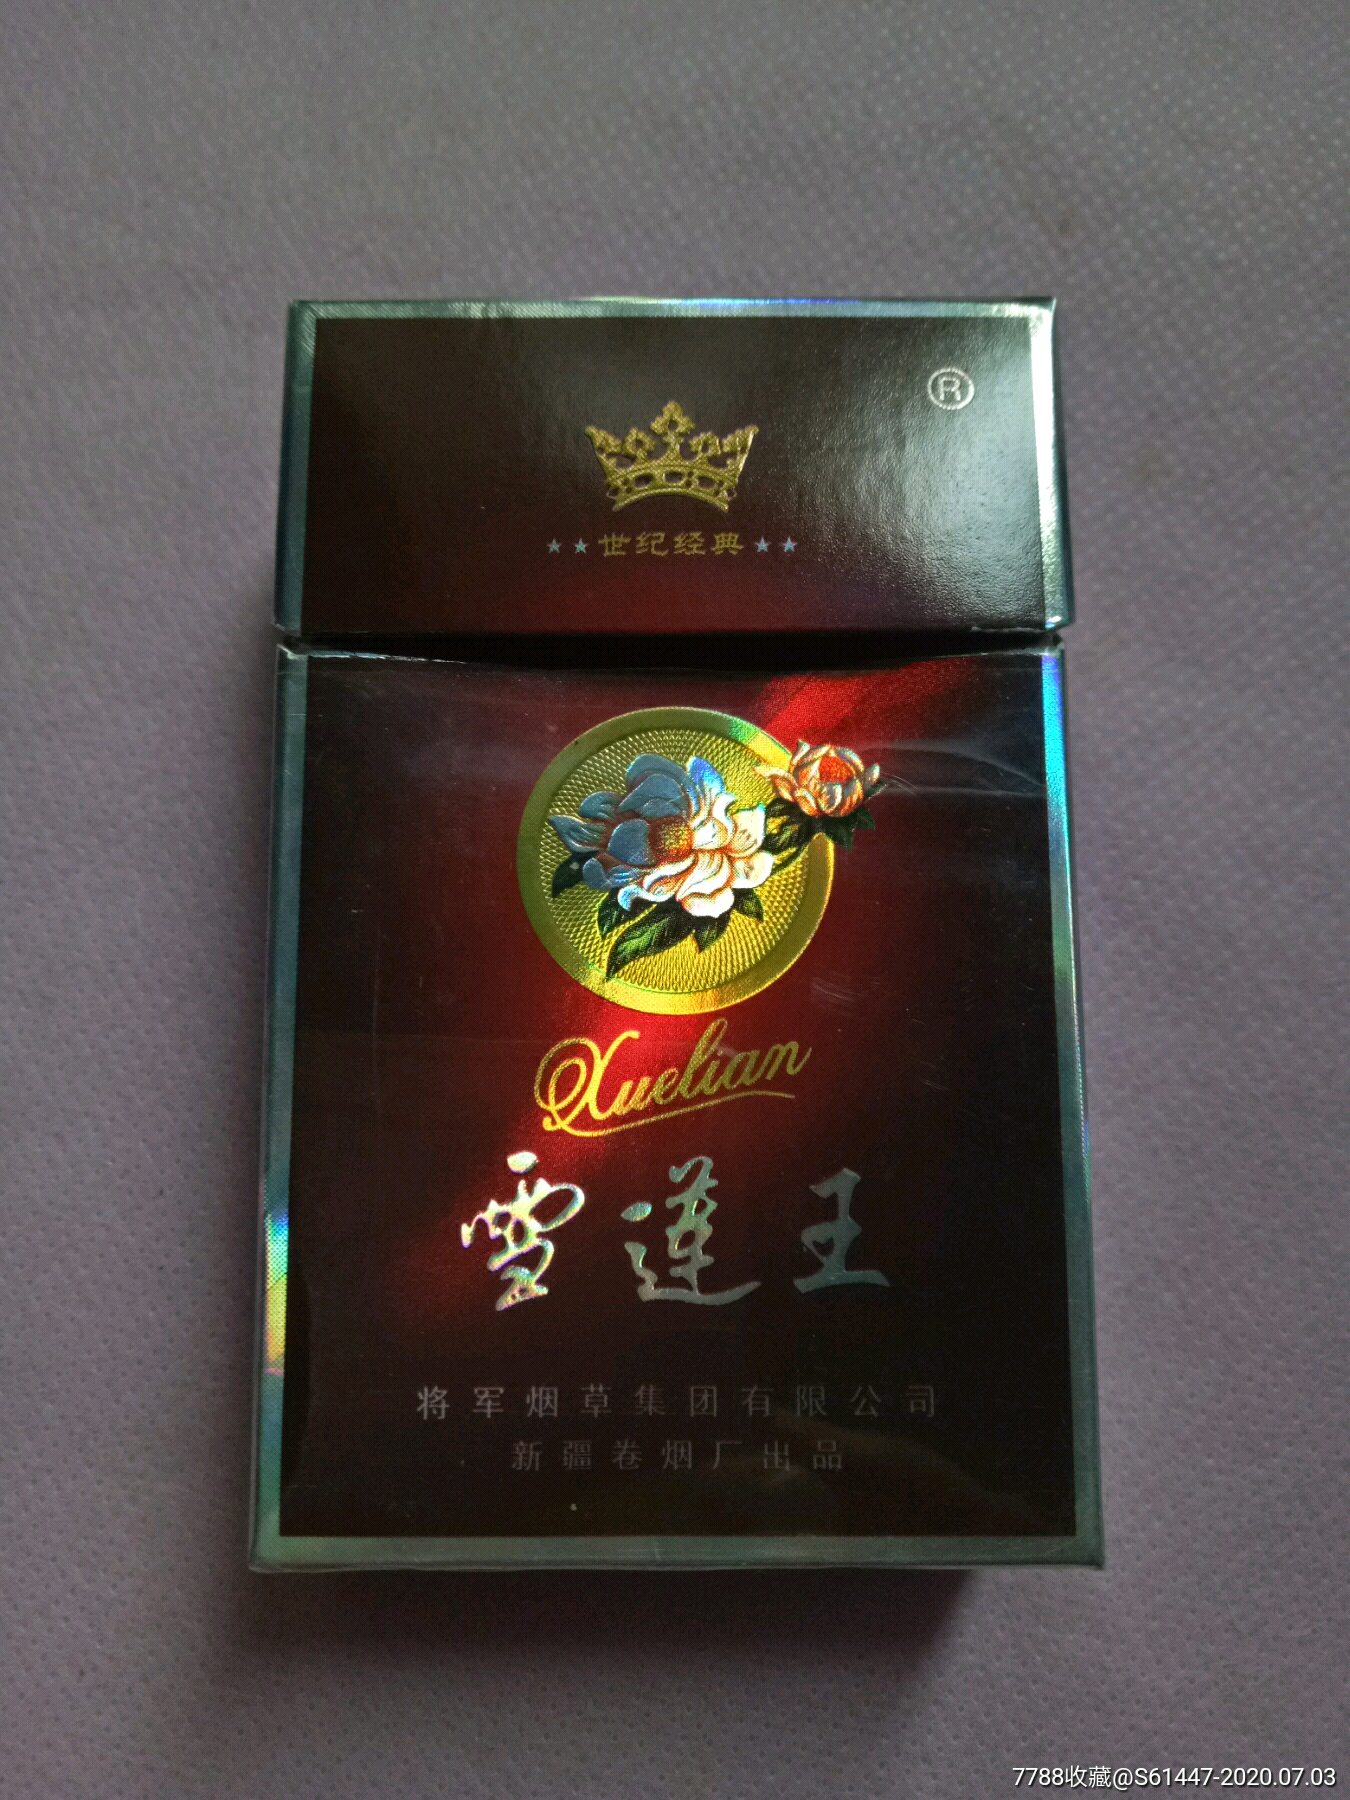 雪莲王香烟图片